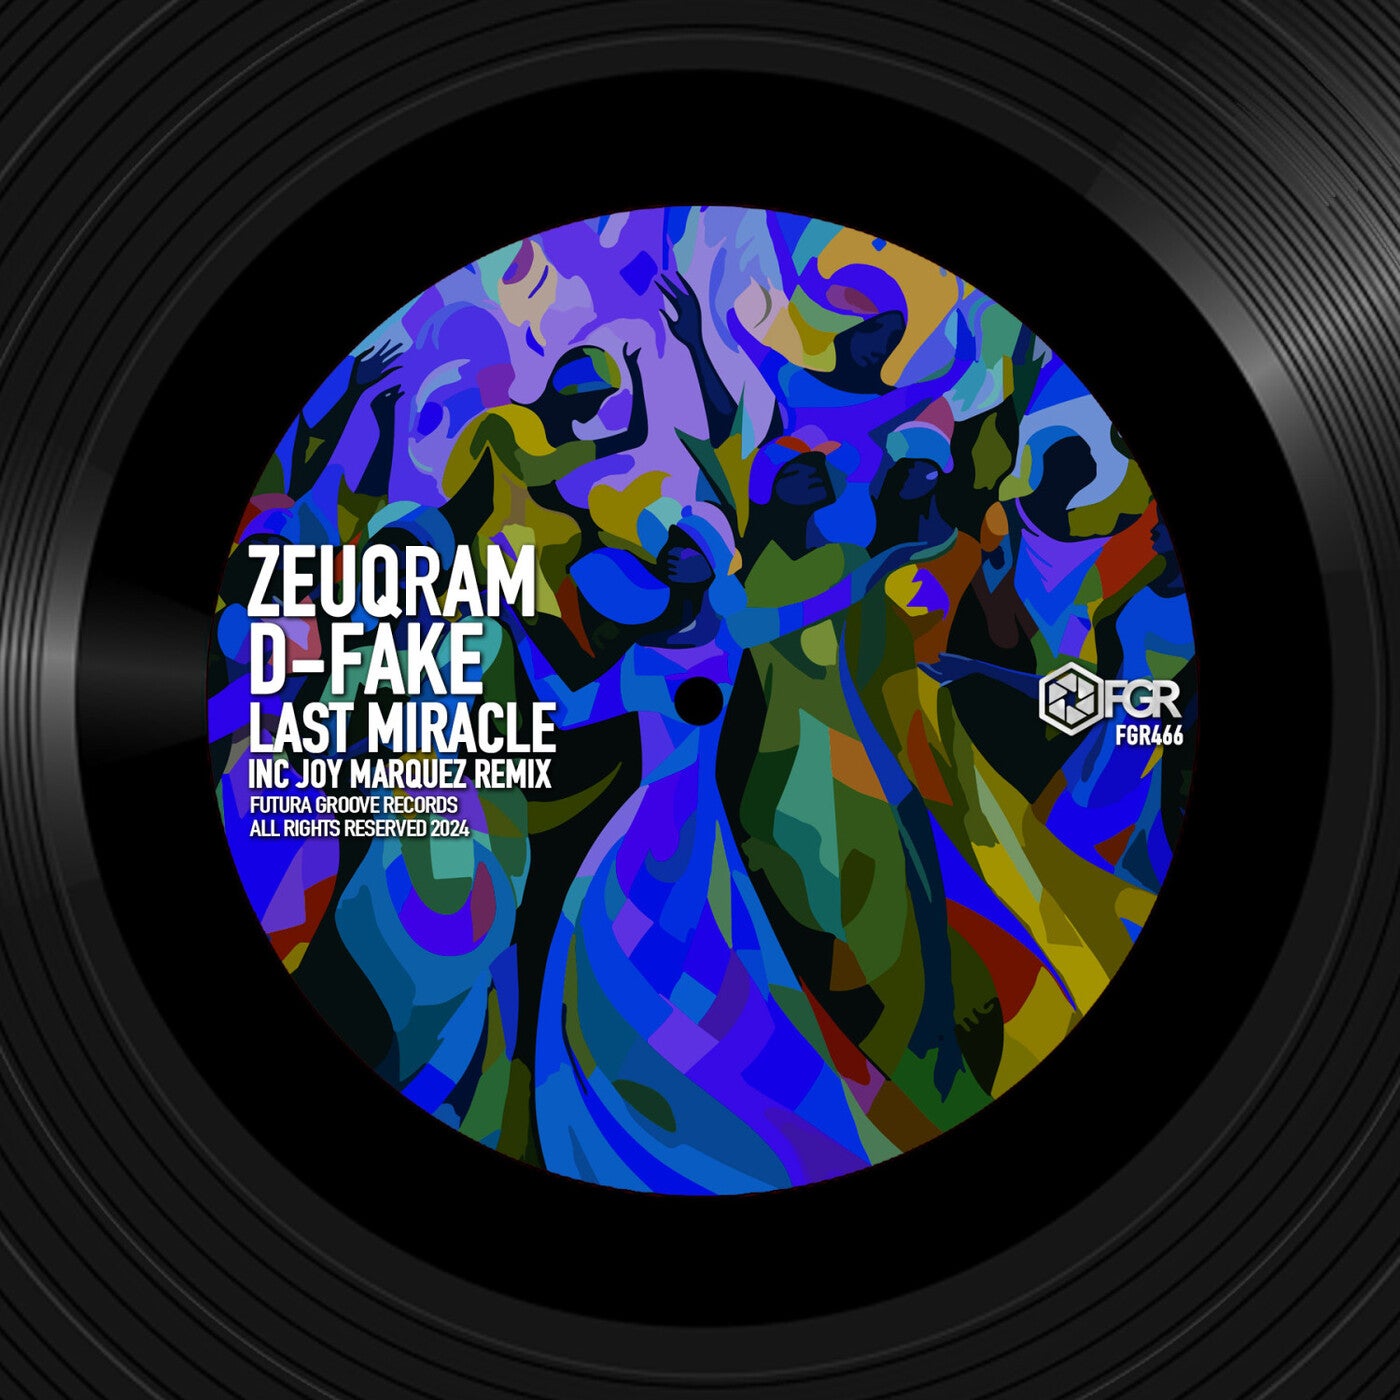 Cover - Zeuqram, D-Fake - Last Miracle (Original Mix)